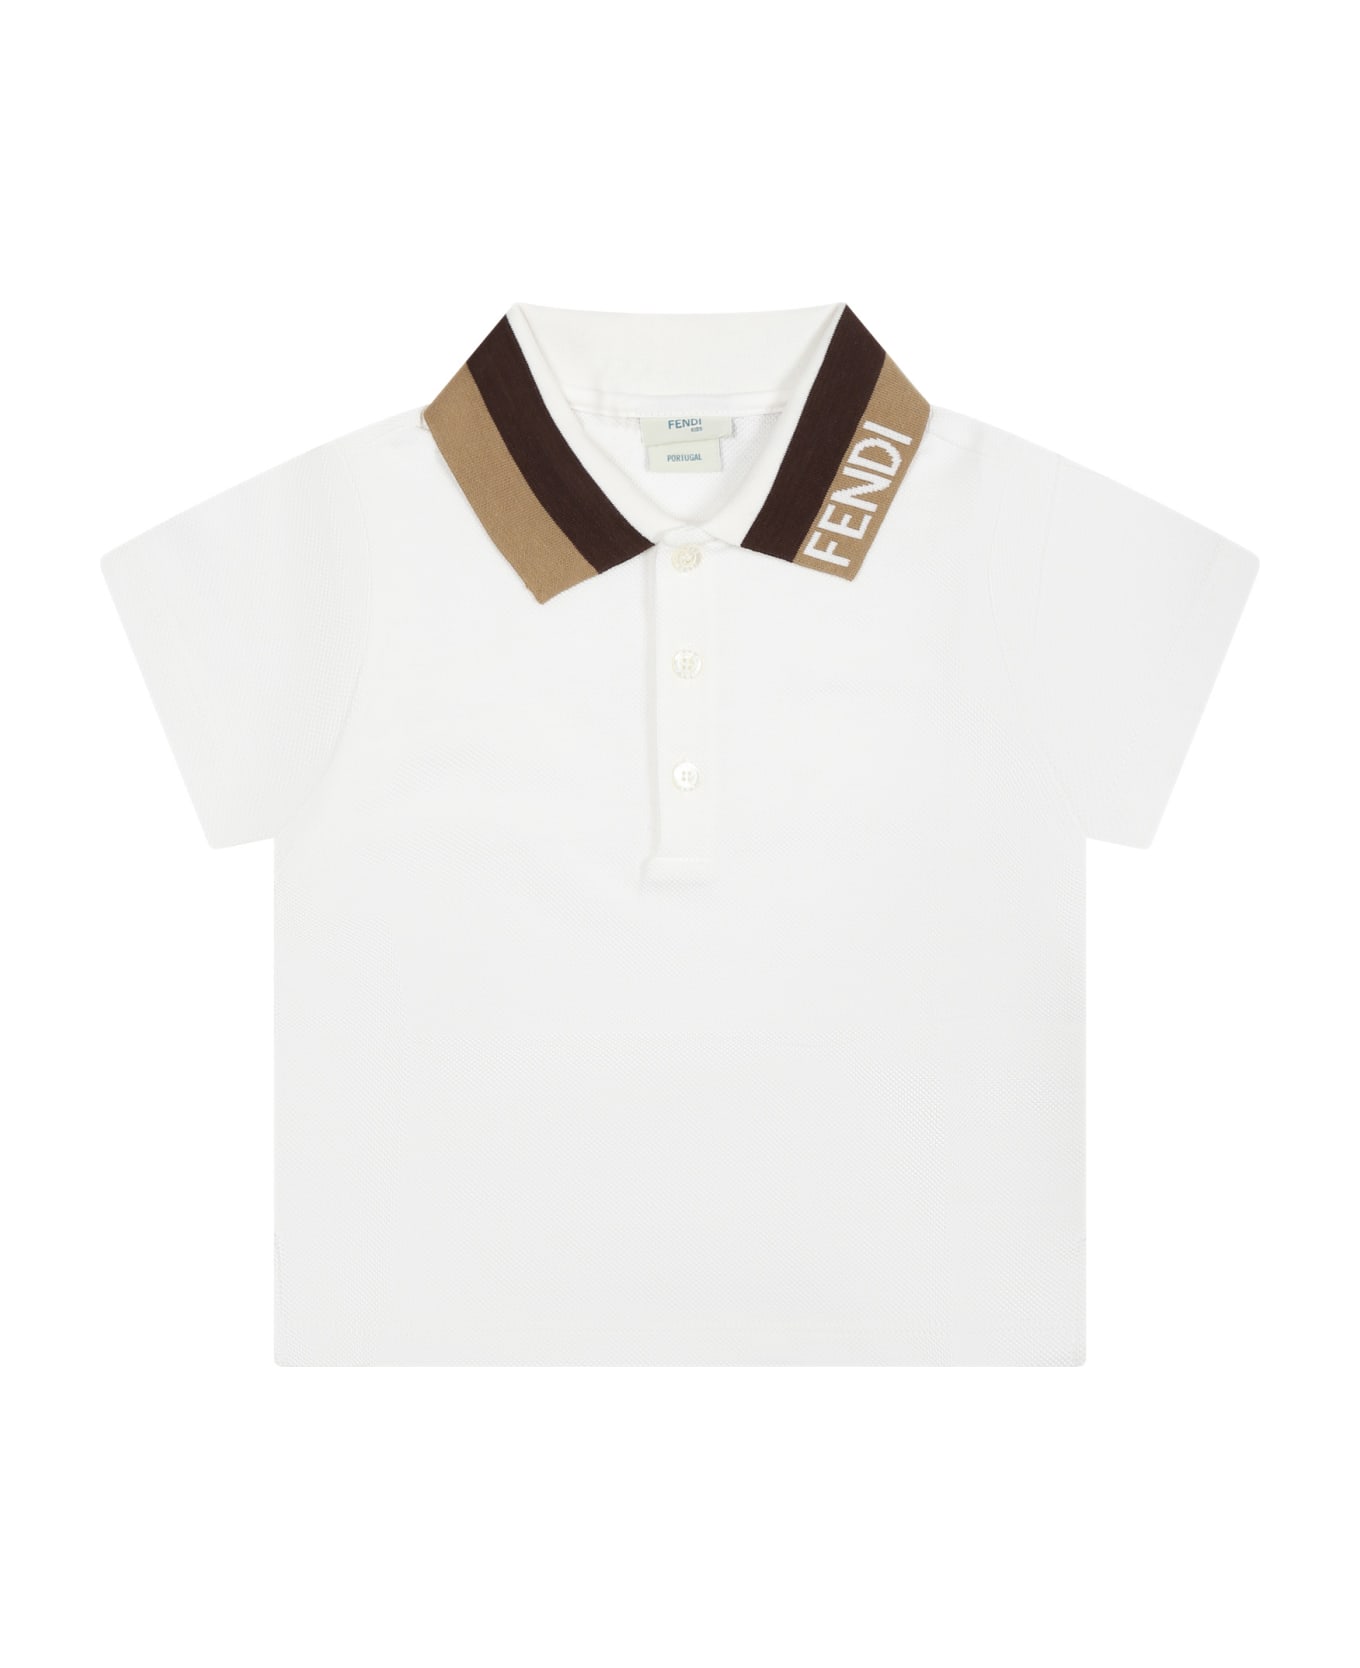 Fendi White Polo Shirt For Baby Boy With Logo - White